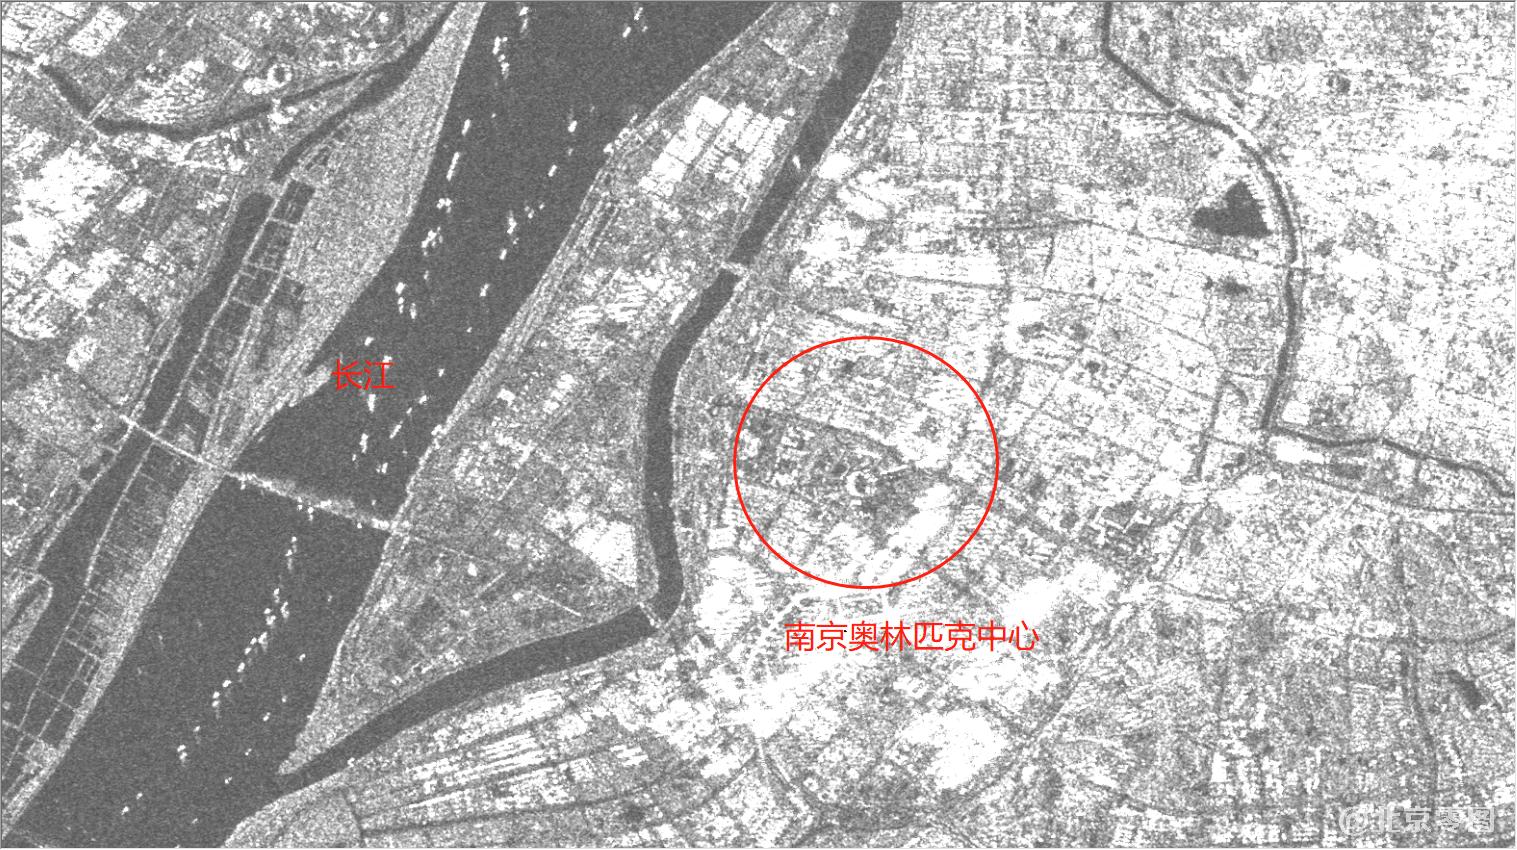 南京奥林匹克中心2021年4月30日雷达影像图